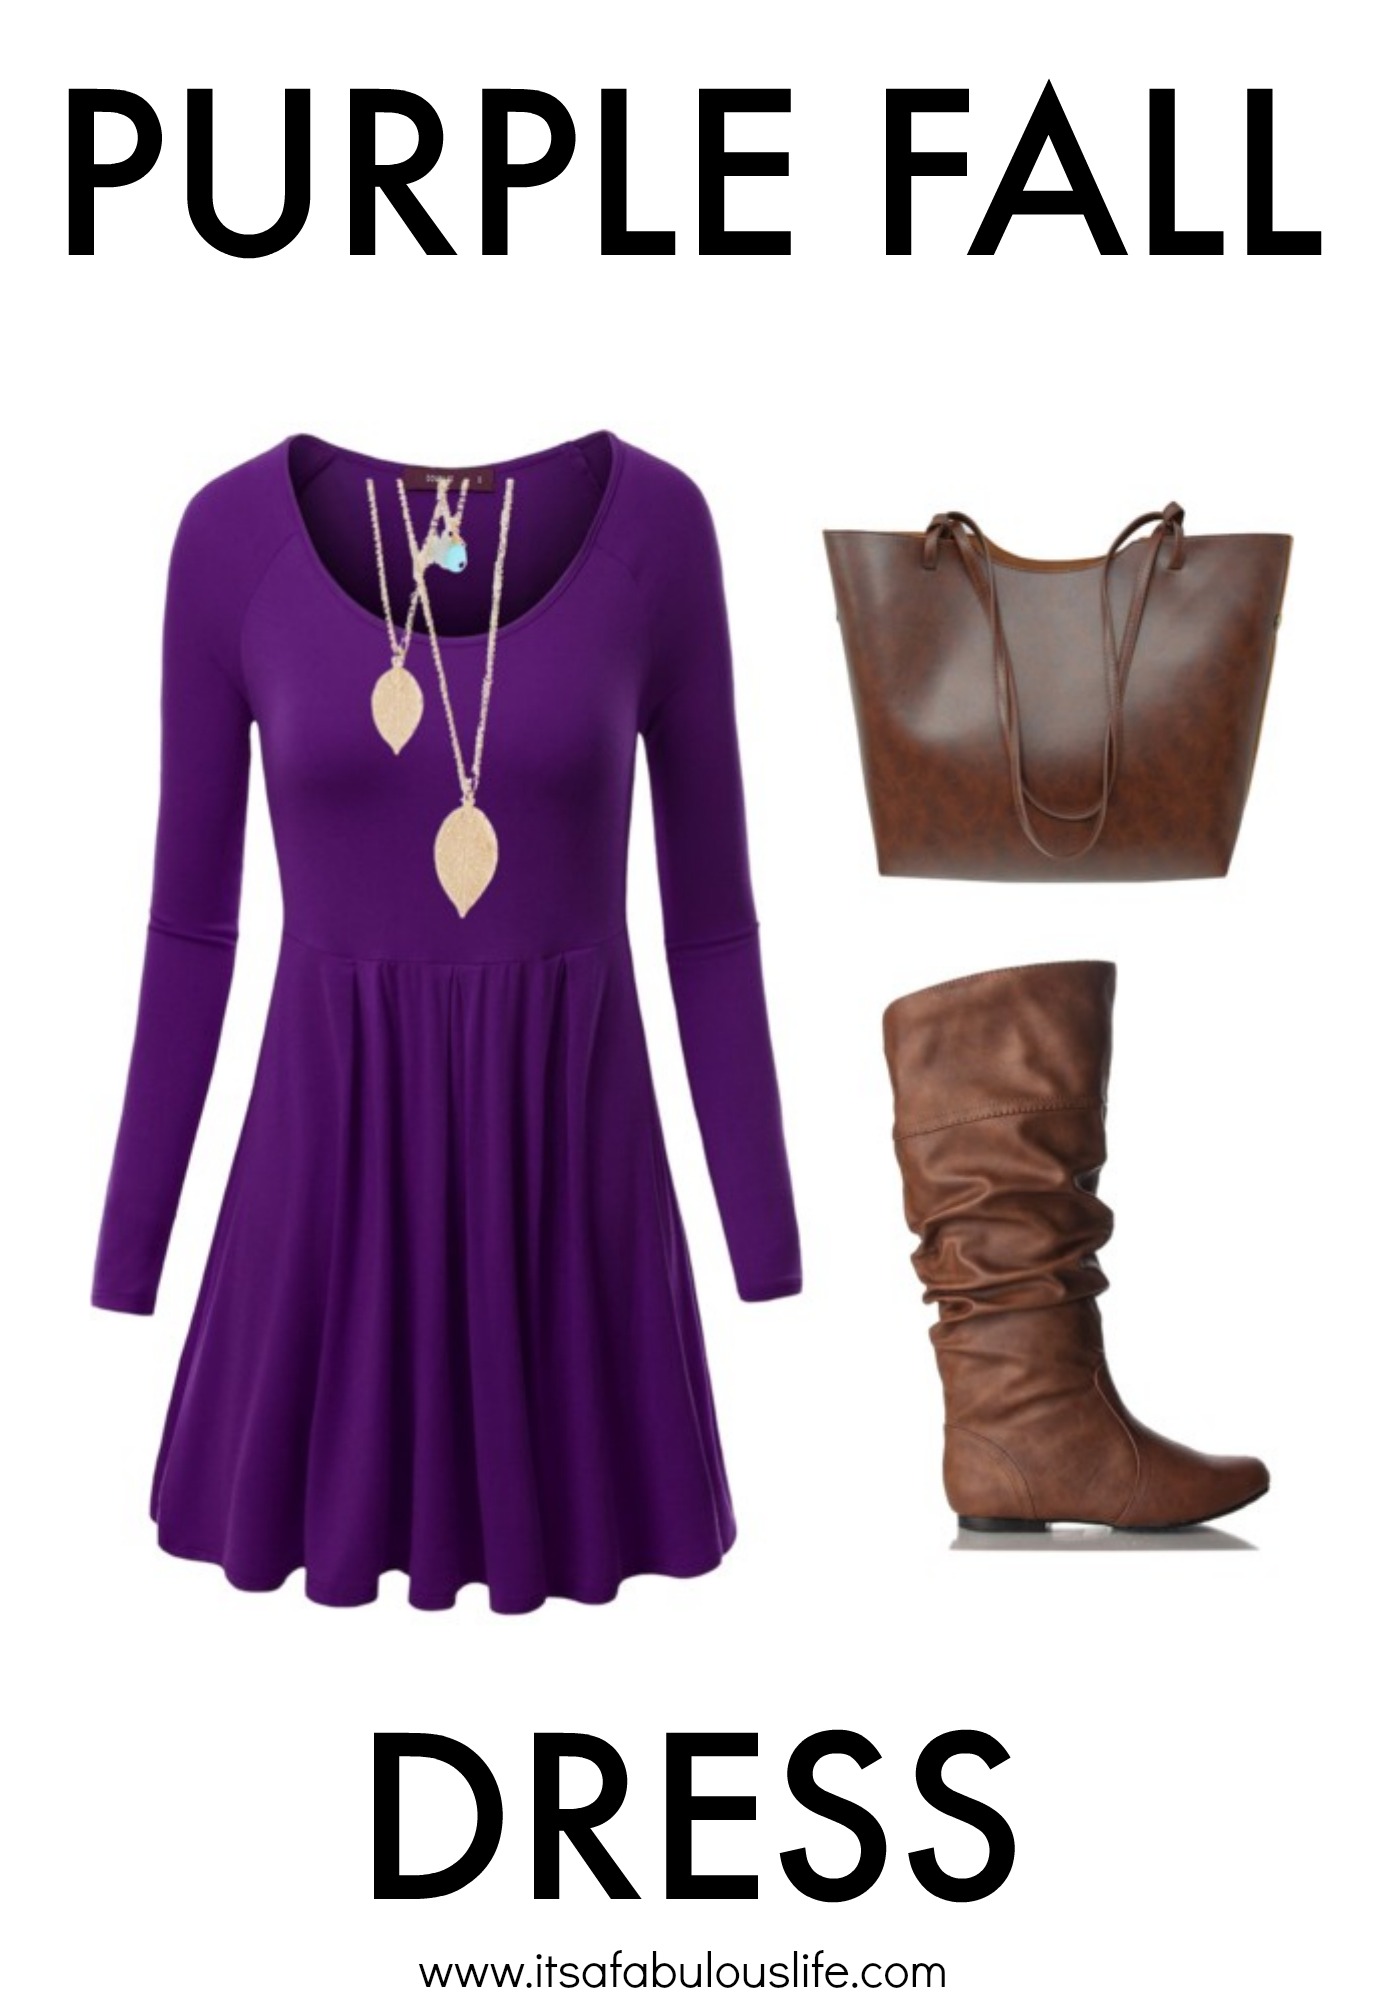 Purple Fall Dress